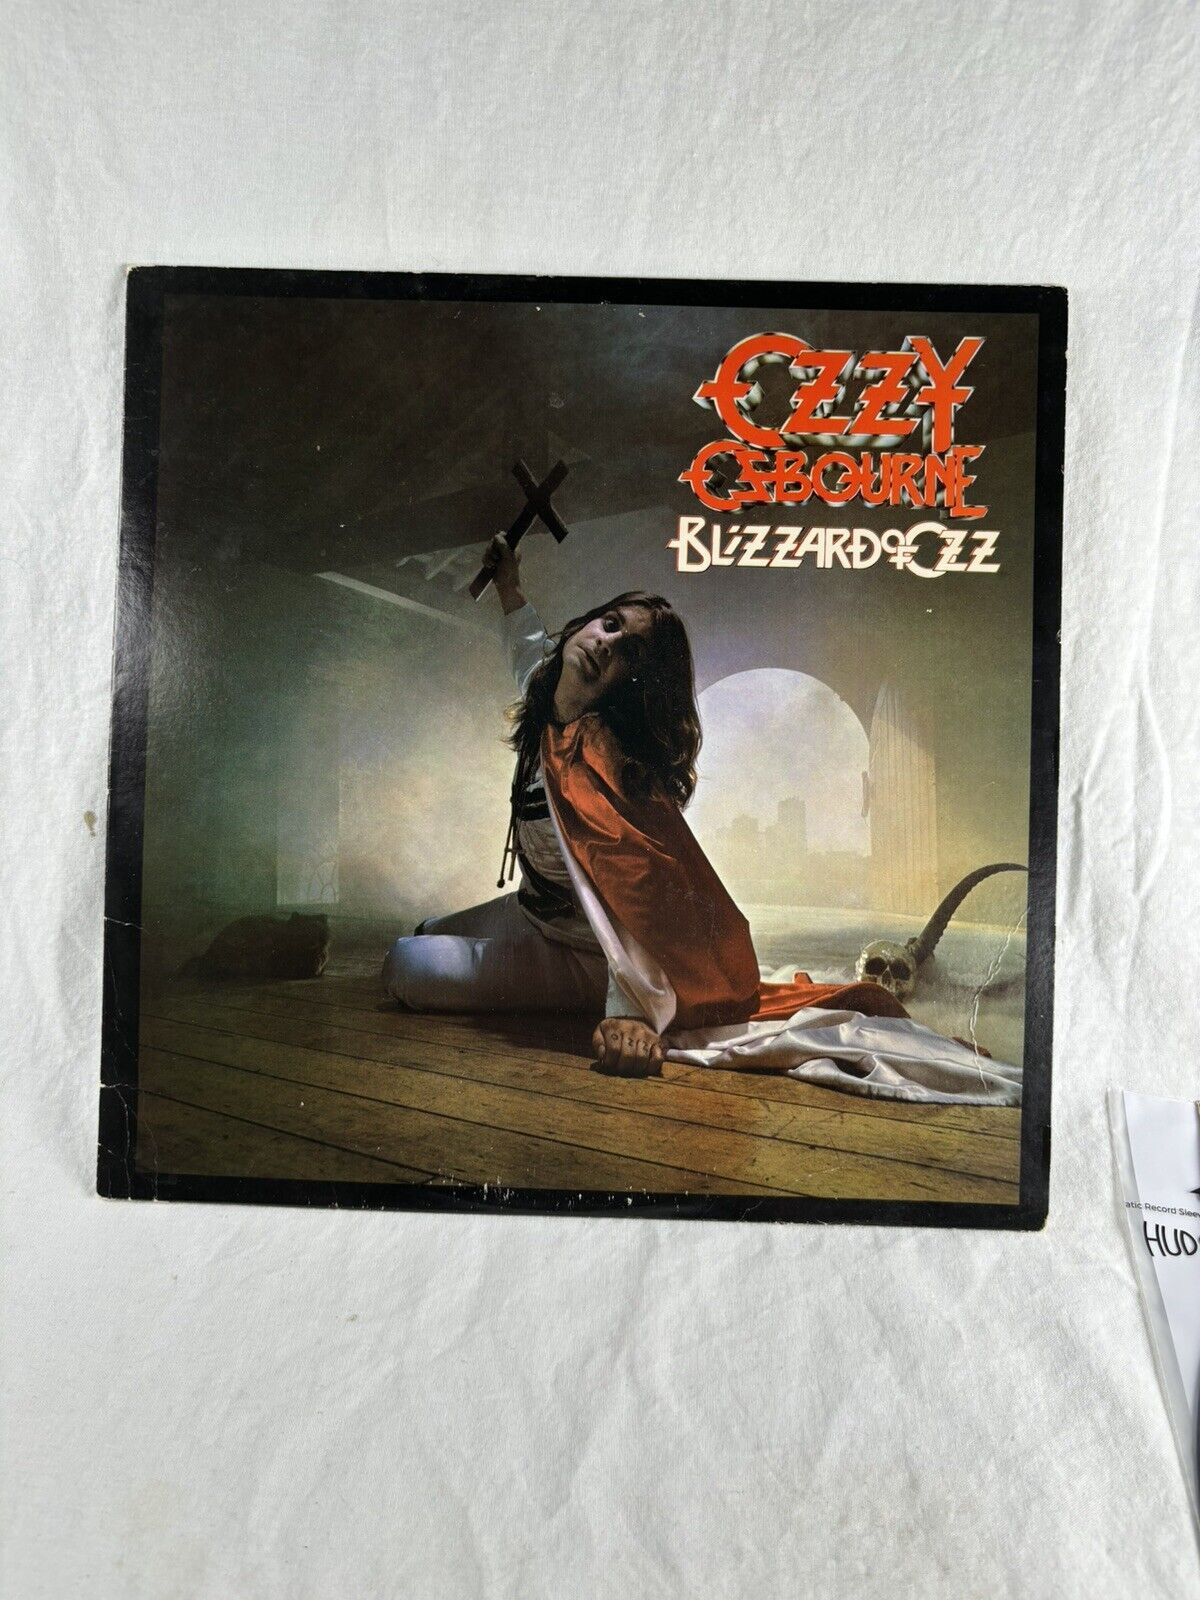 Ozzy Osbourne Blizzard of Ozz LP Album 1981 Jet Records JZ 36812 NM